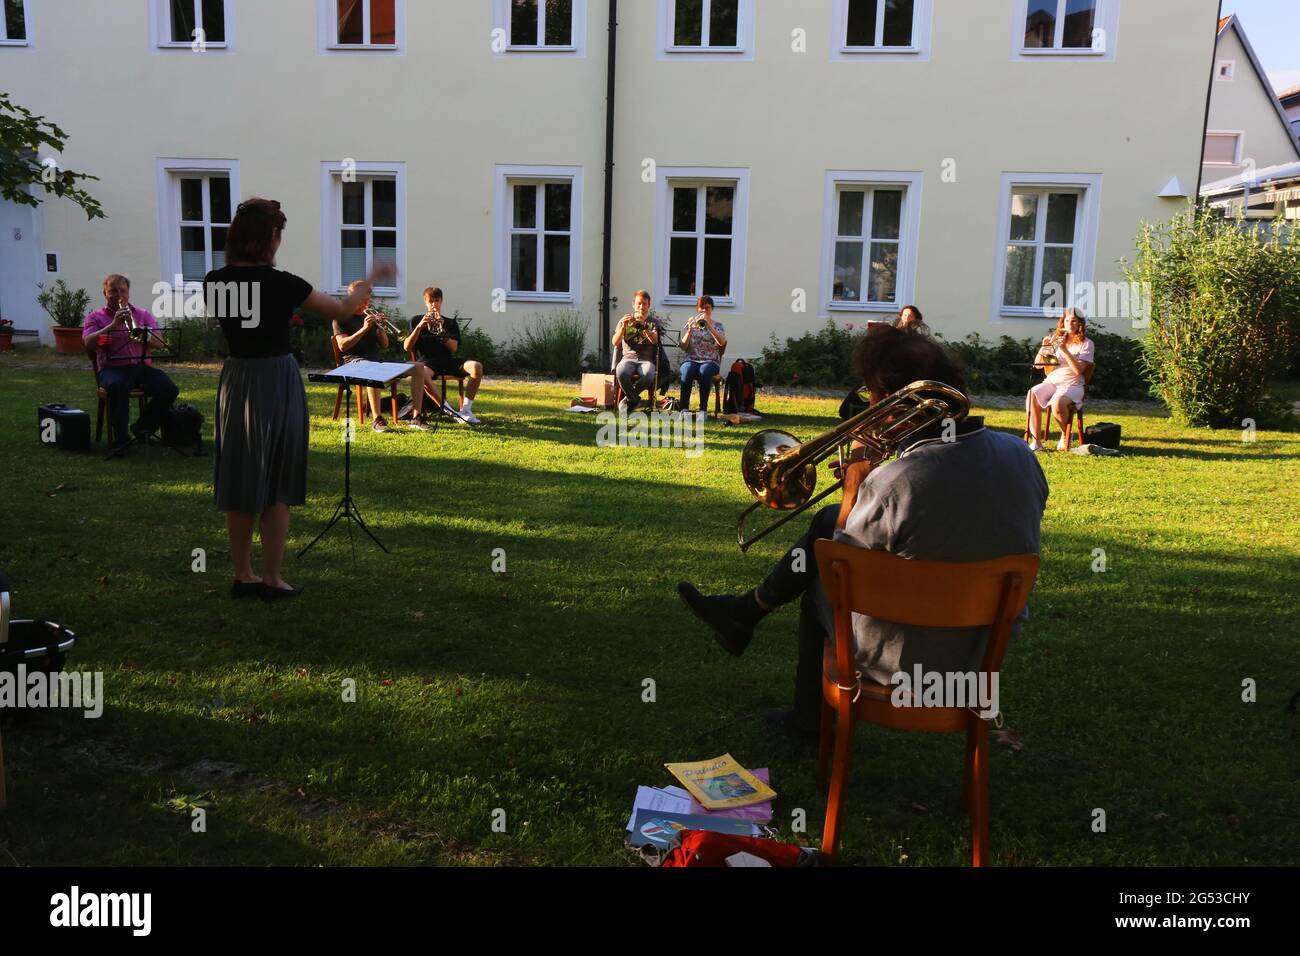 Ein Bläserensemble probt im schattigen Garten eines alten Gebäudes neue Musikstücke mit Trompete, Posaune und Tuba unter Anleitung einer Dirigentin. Foto Stock